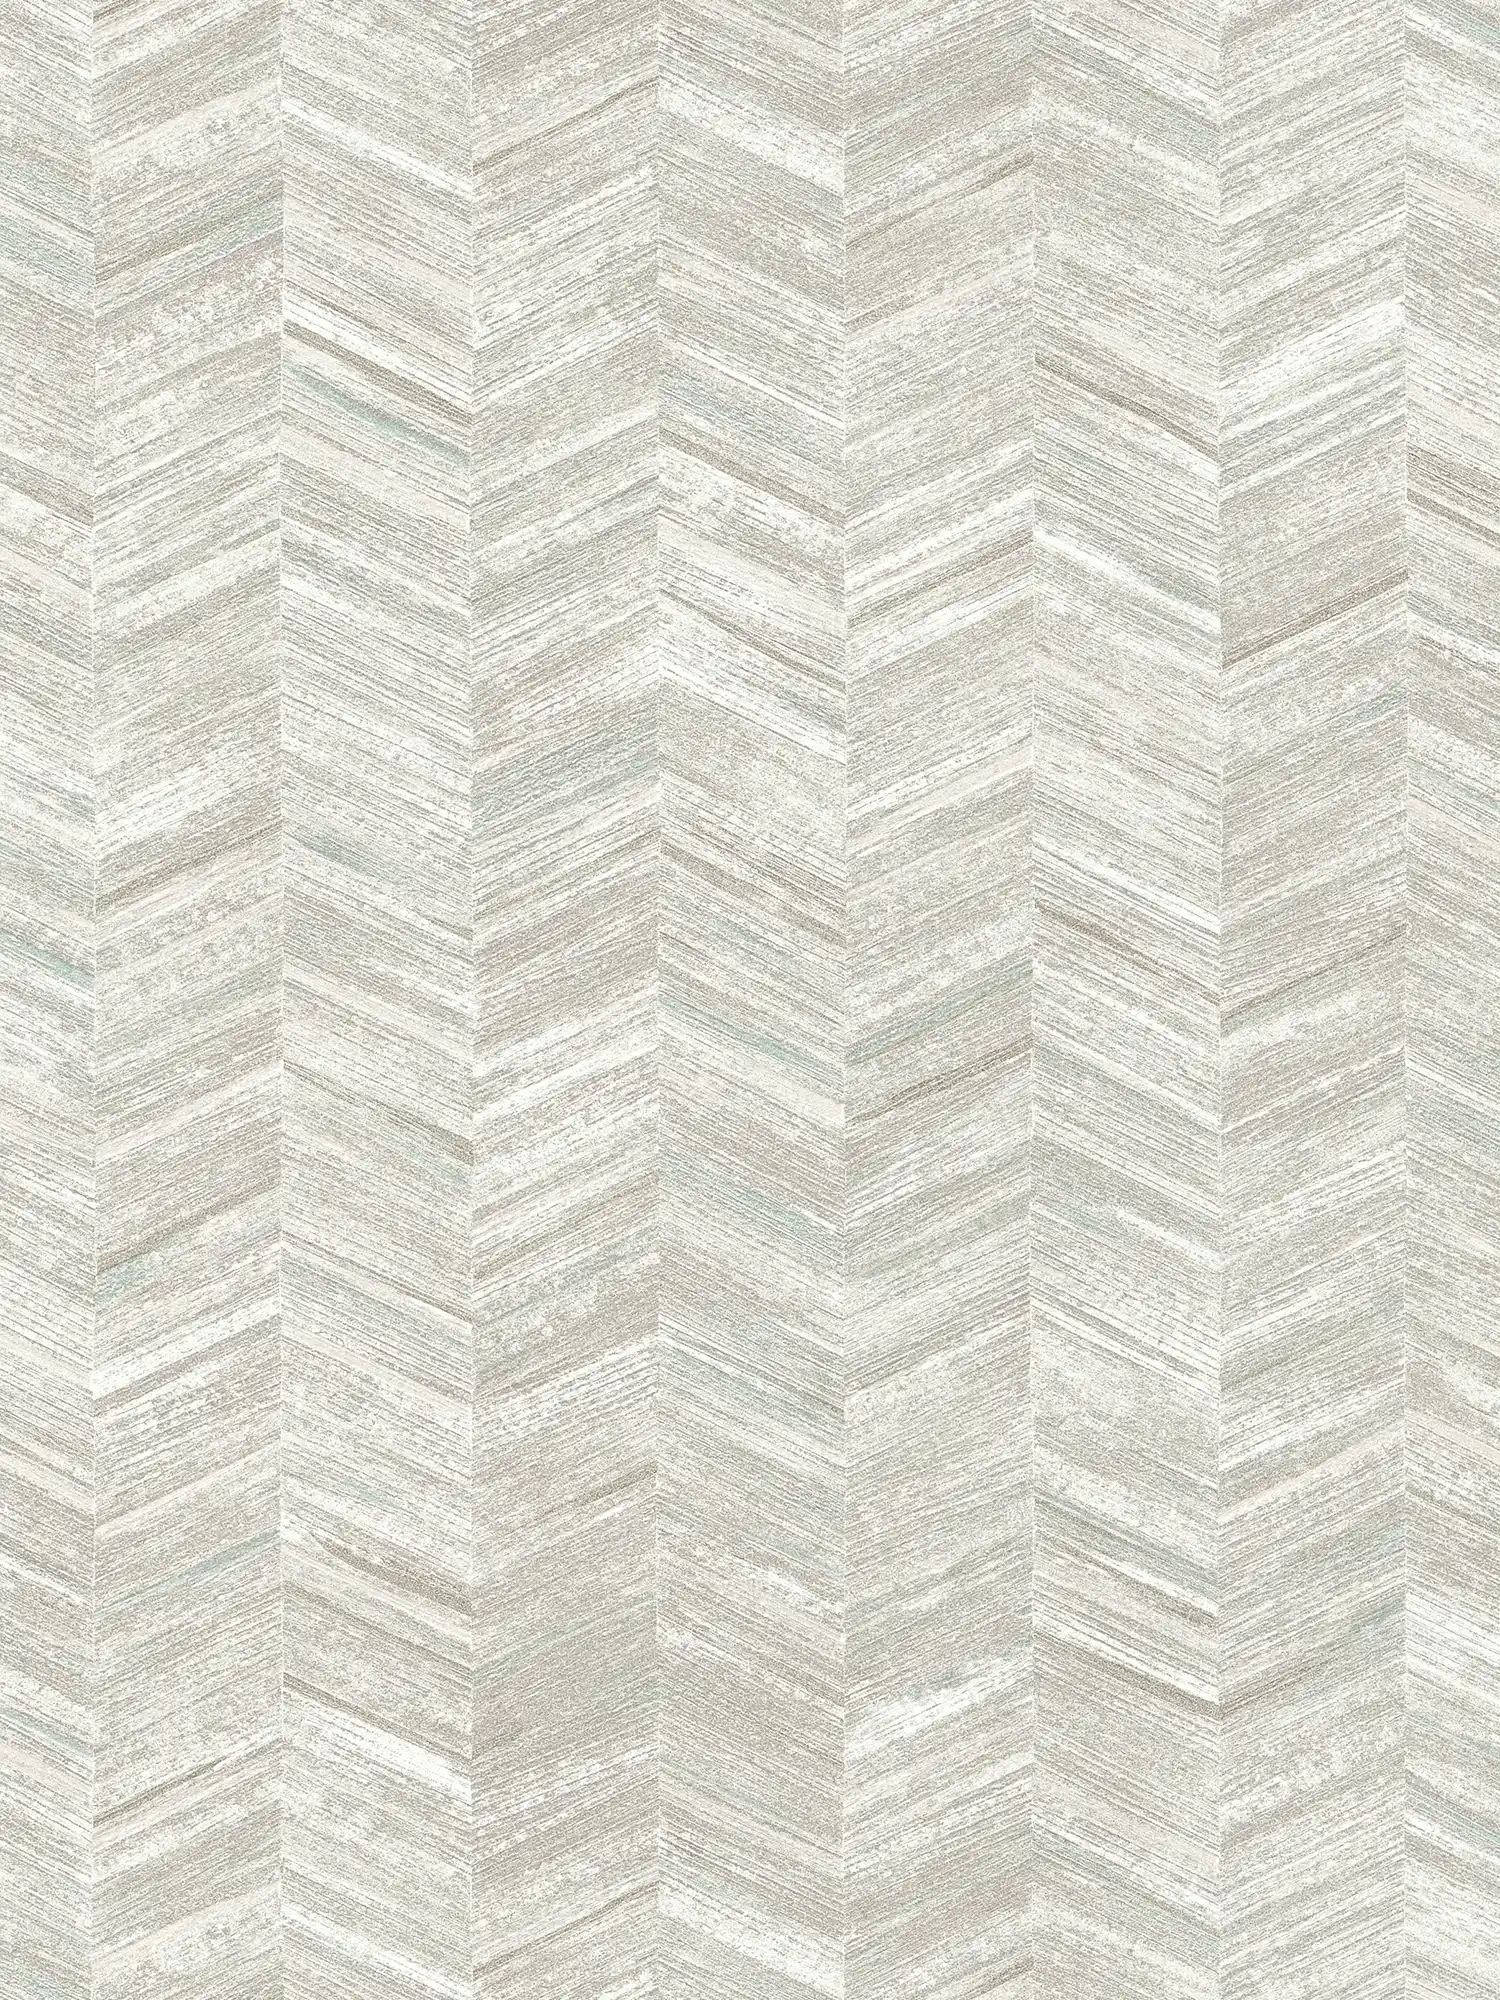 Carta da parati testurizzata in tessuto non tessuto con effetto legno e motivo a spina di pesce - grigio, bianco
